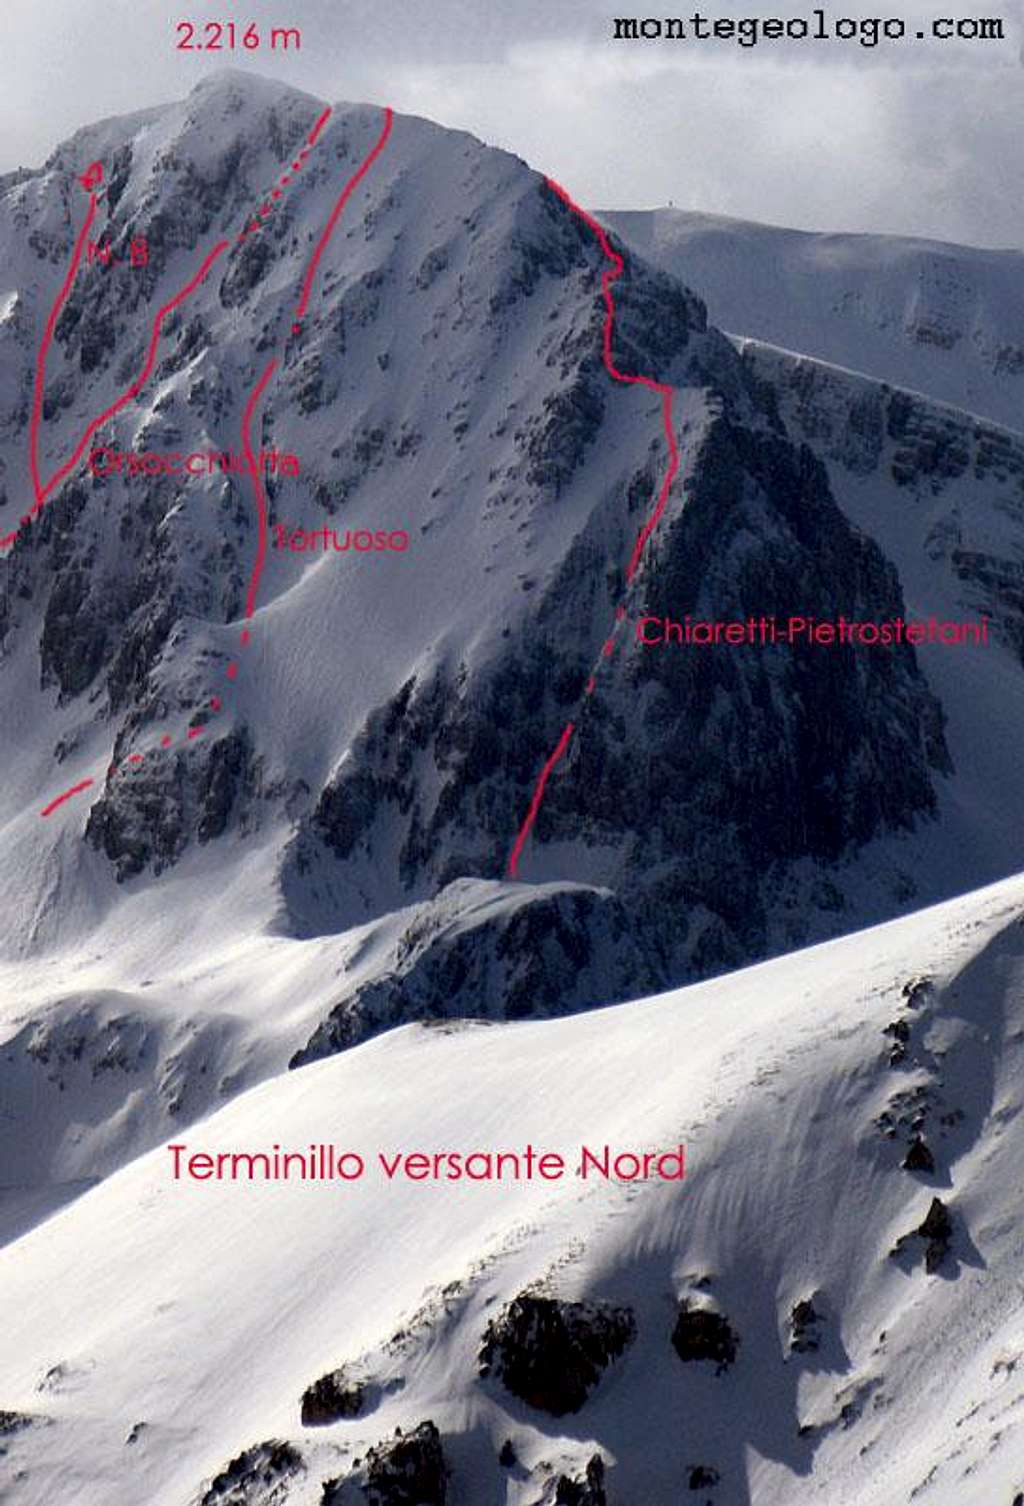 Terminillo NE side 3, the routes